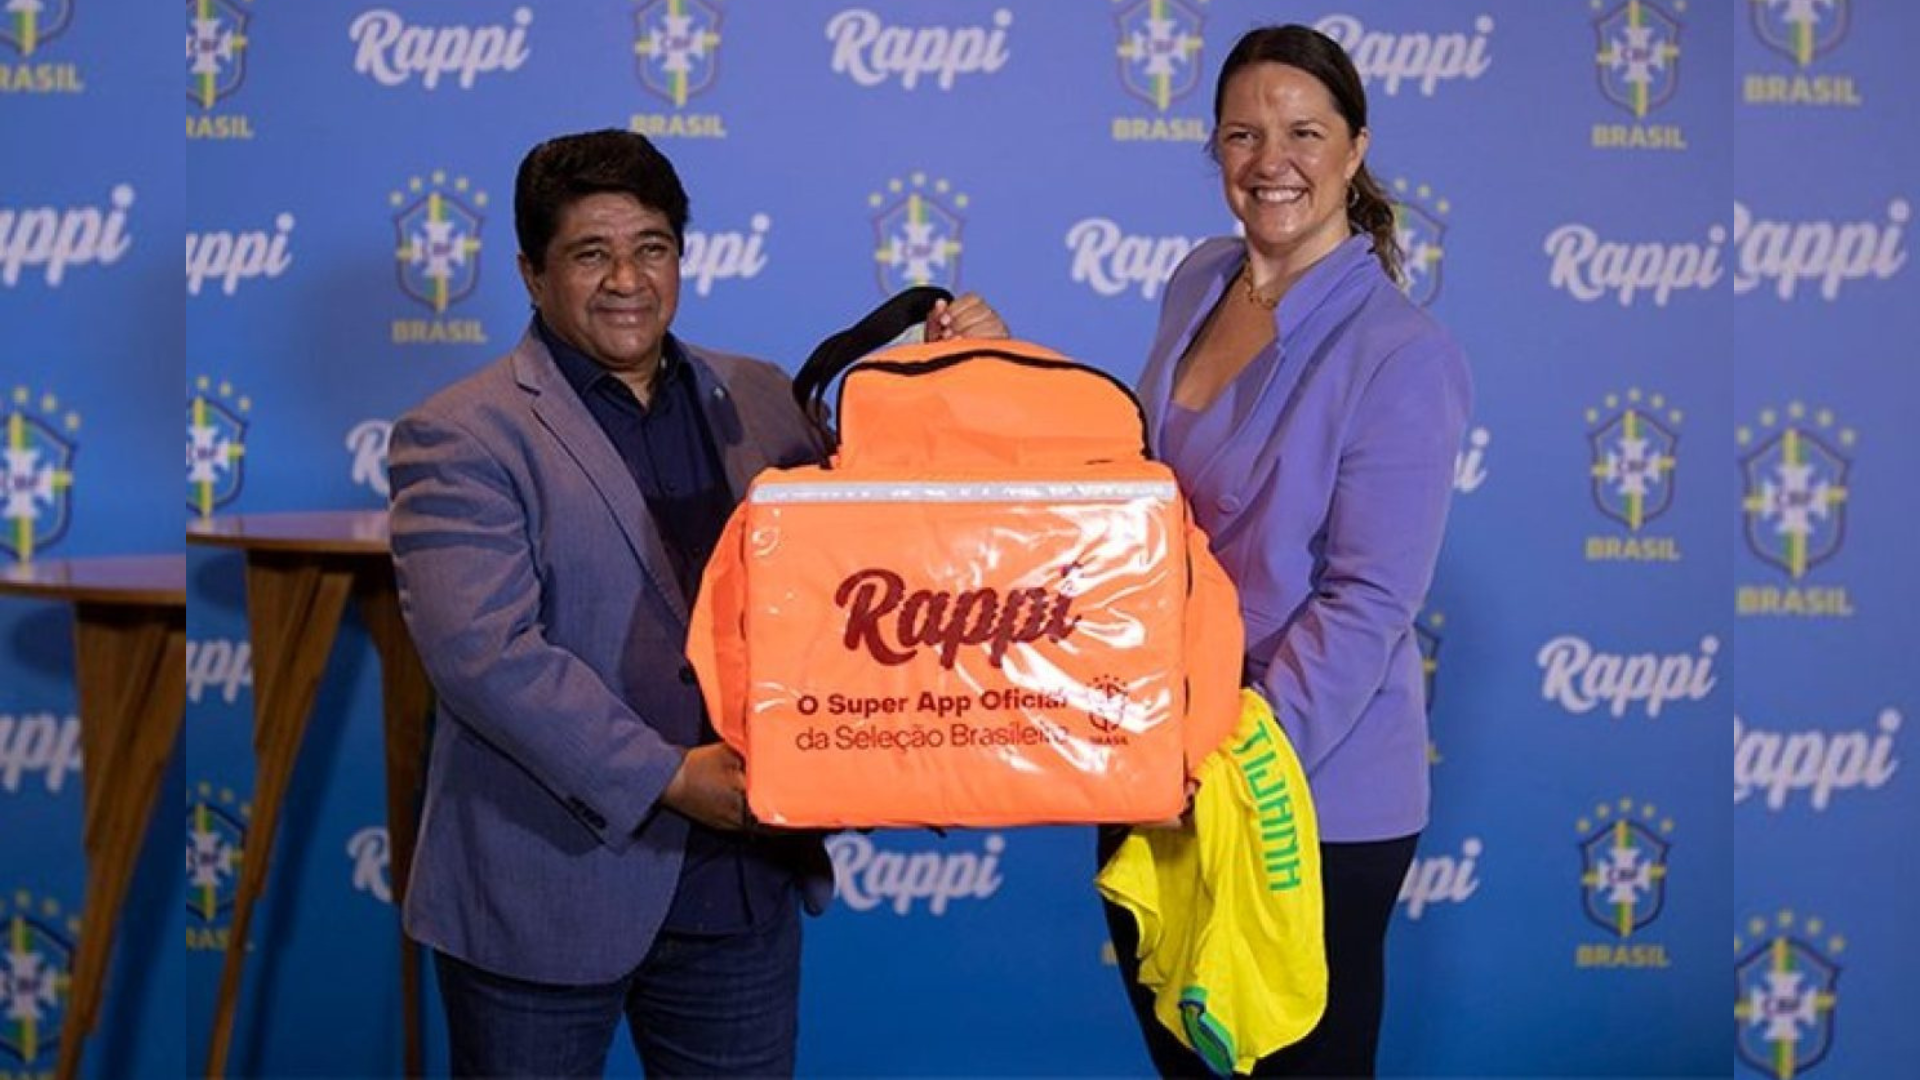 La empresa colombiana Rappi se convirtió en patrocinador oficial de la selección de Brasil. Imagen: CBF